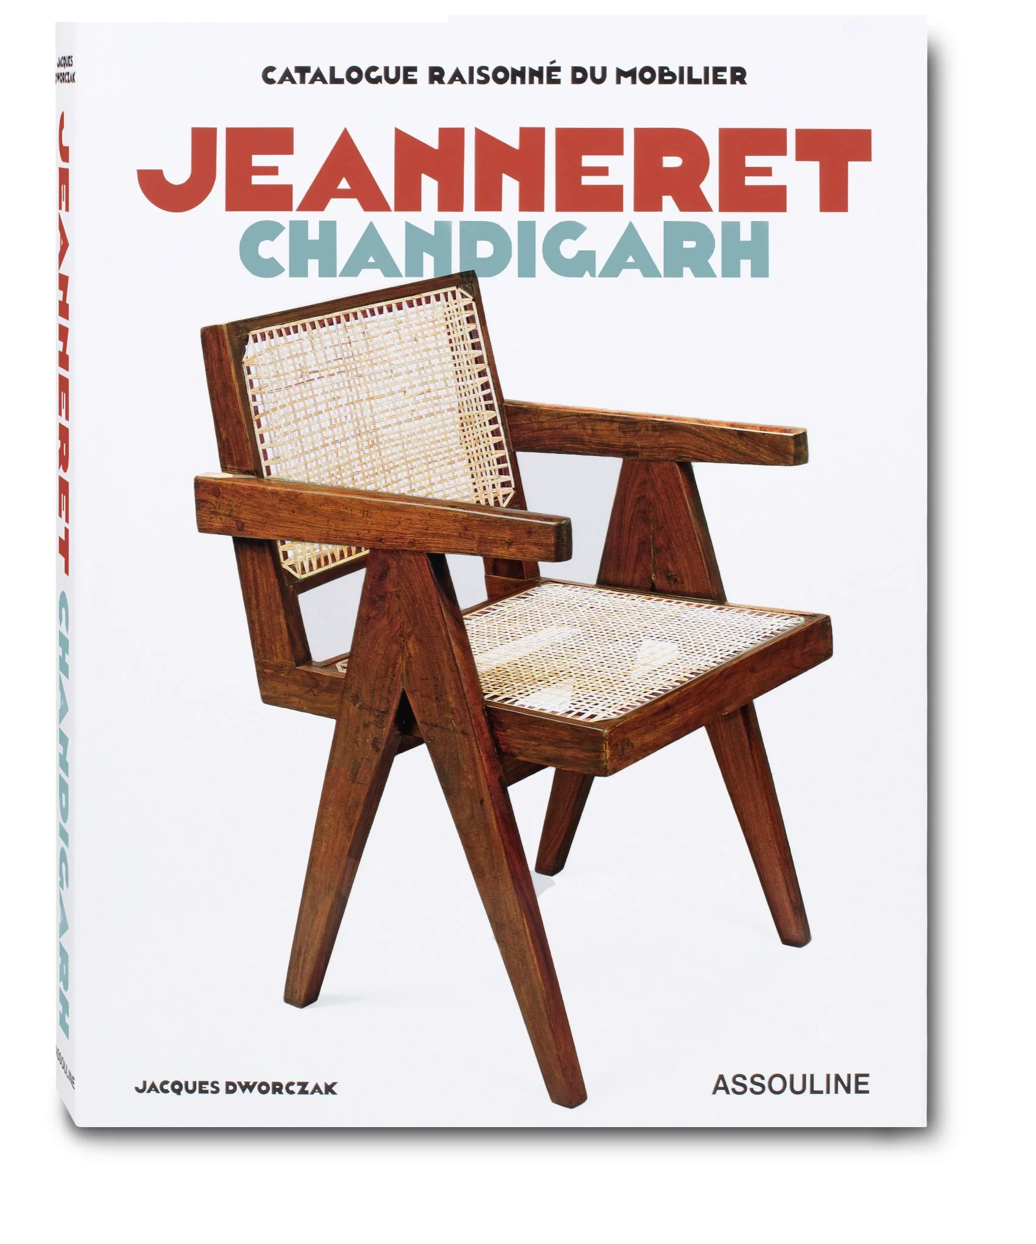 Jeanneret Chandigarh by Jacques Dworczak